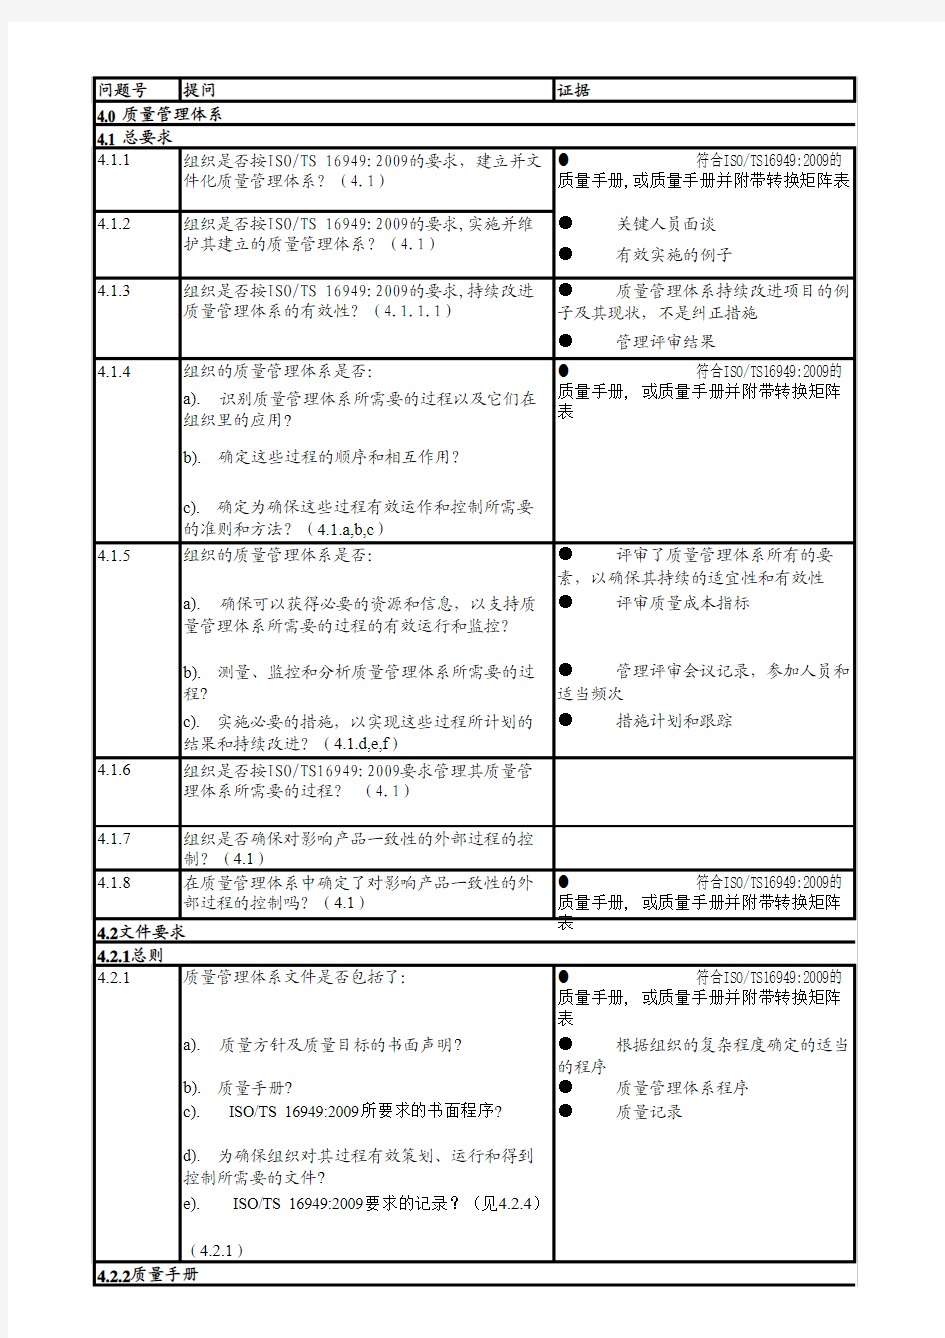 TS16949-2009内审检查表